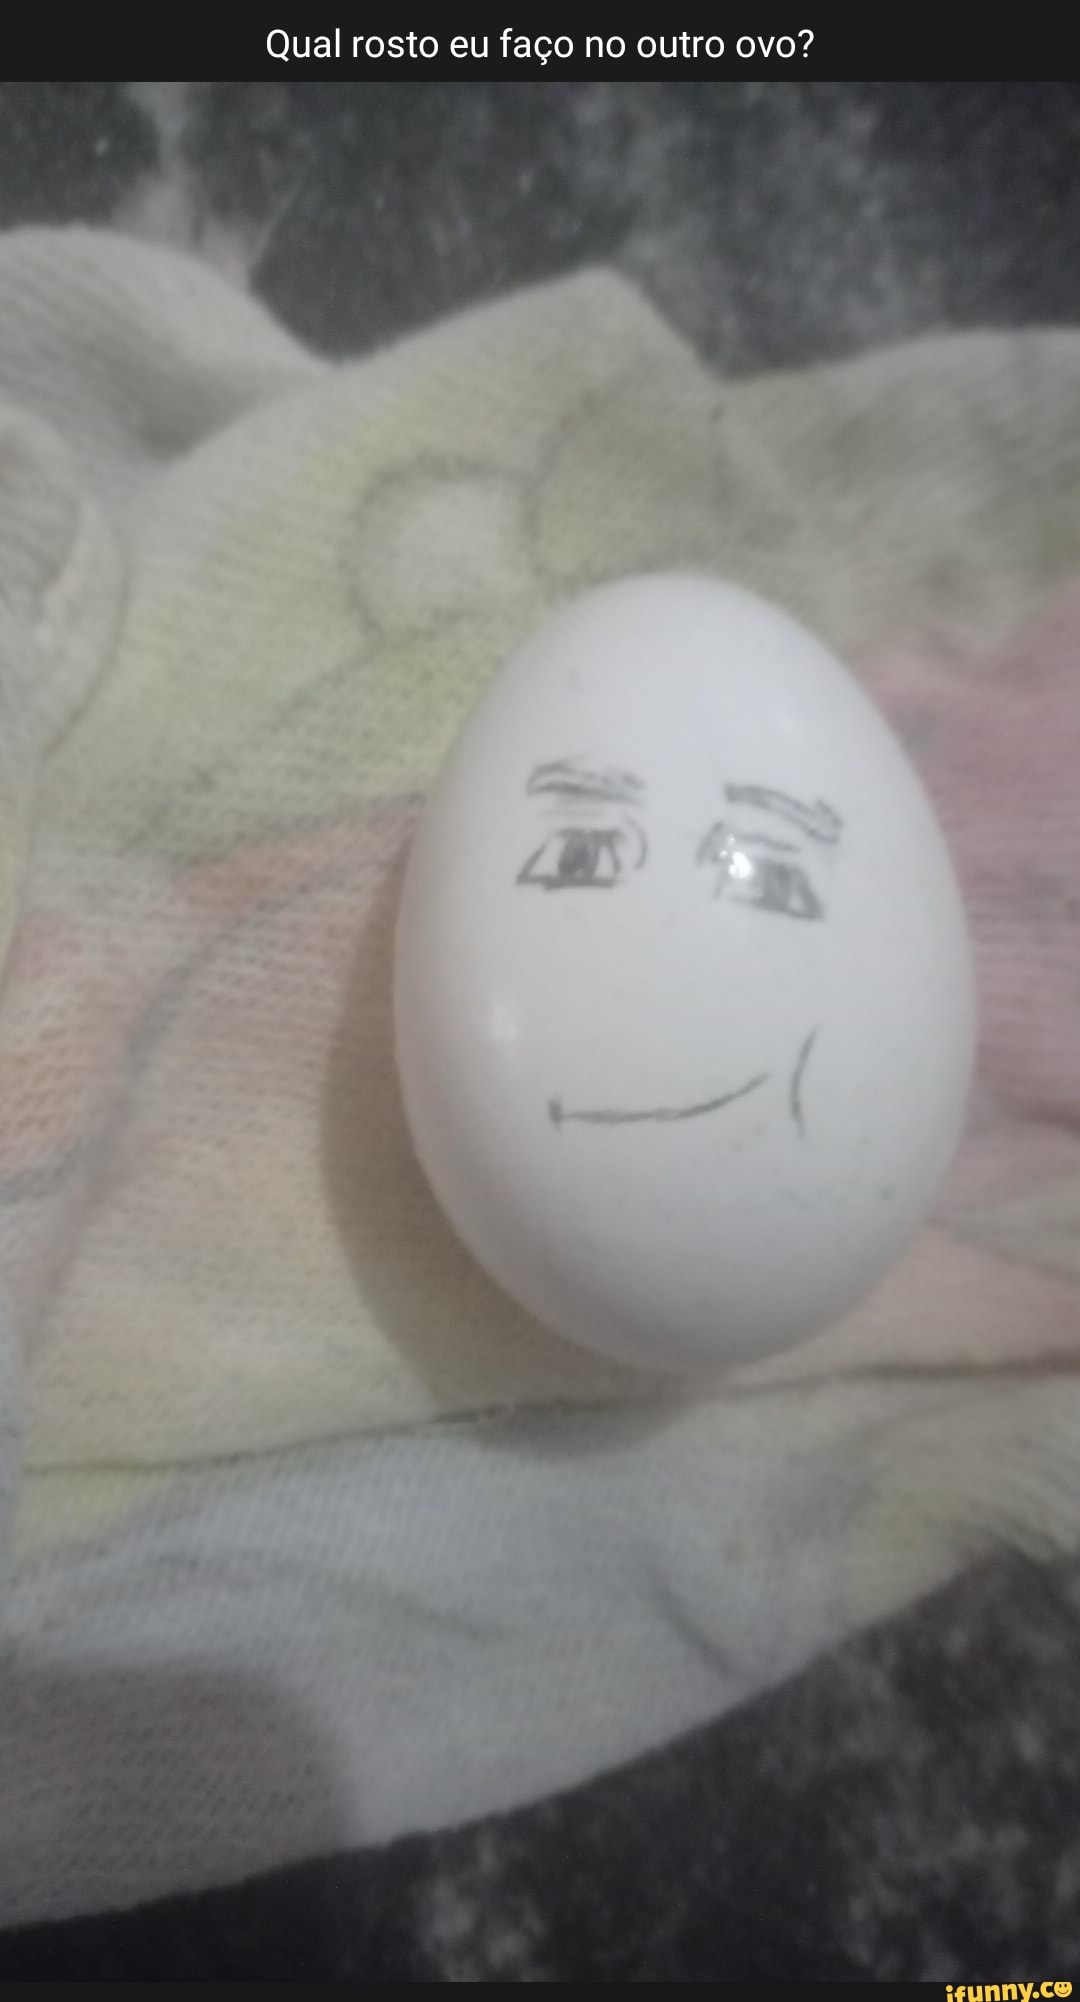 Qual rosto eu faço no outro ovo? - iFunny Brazil